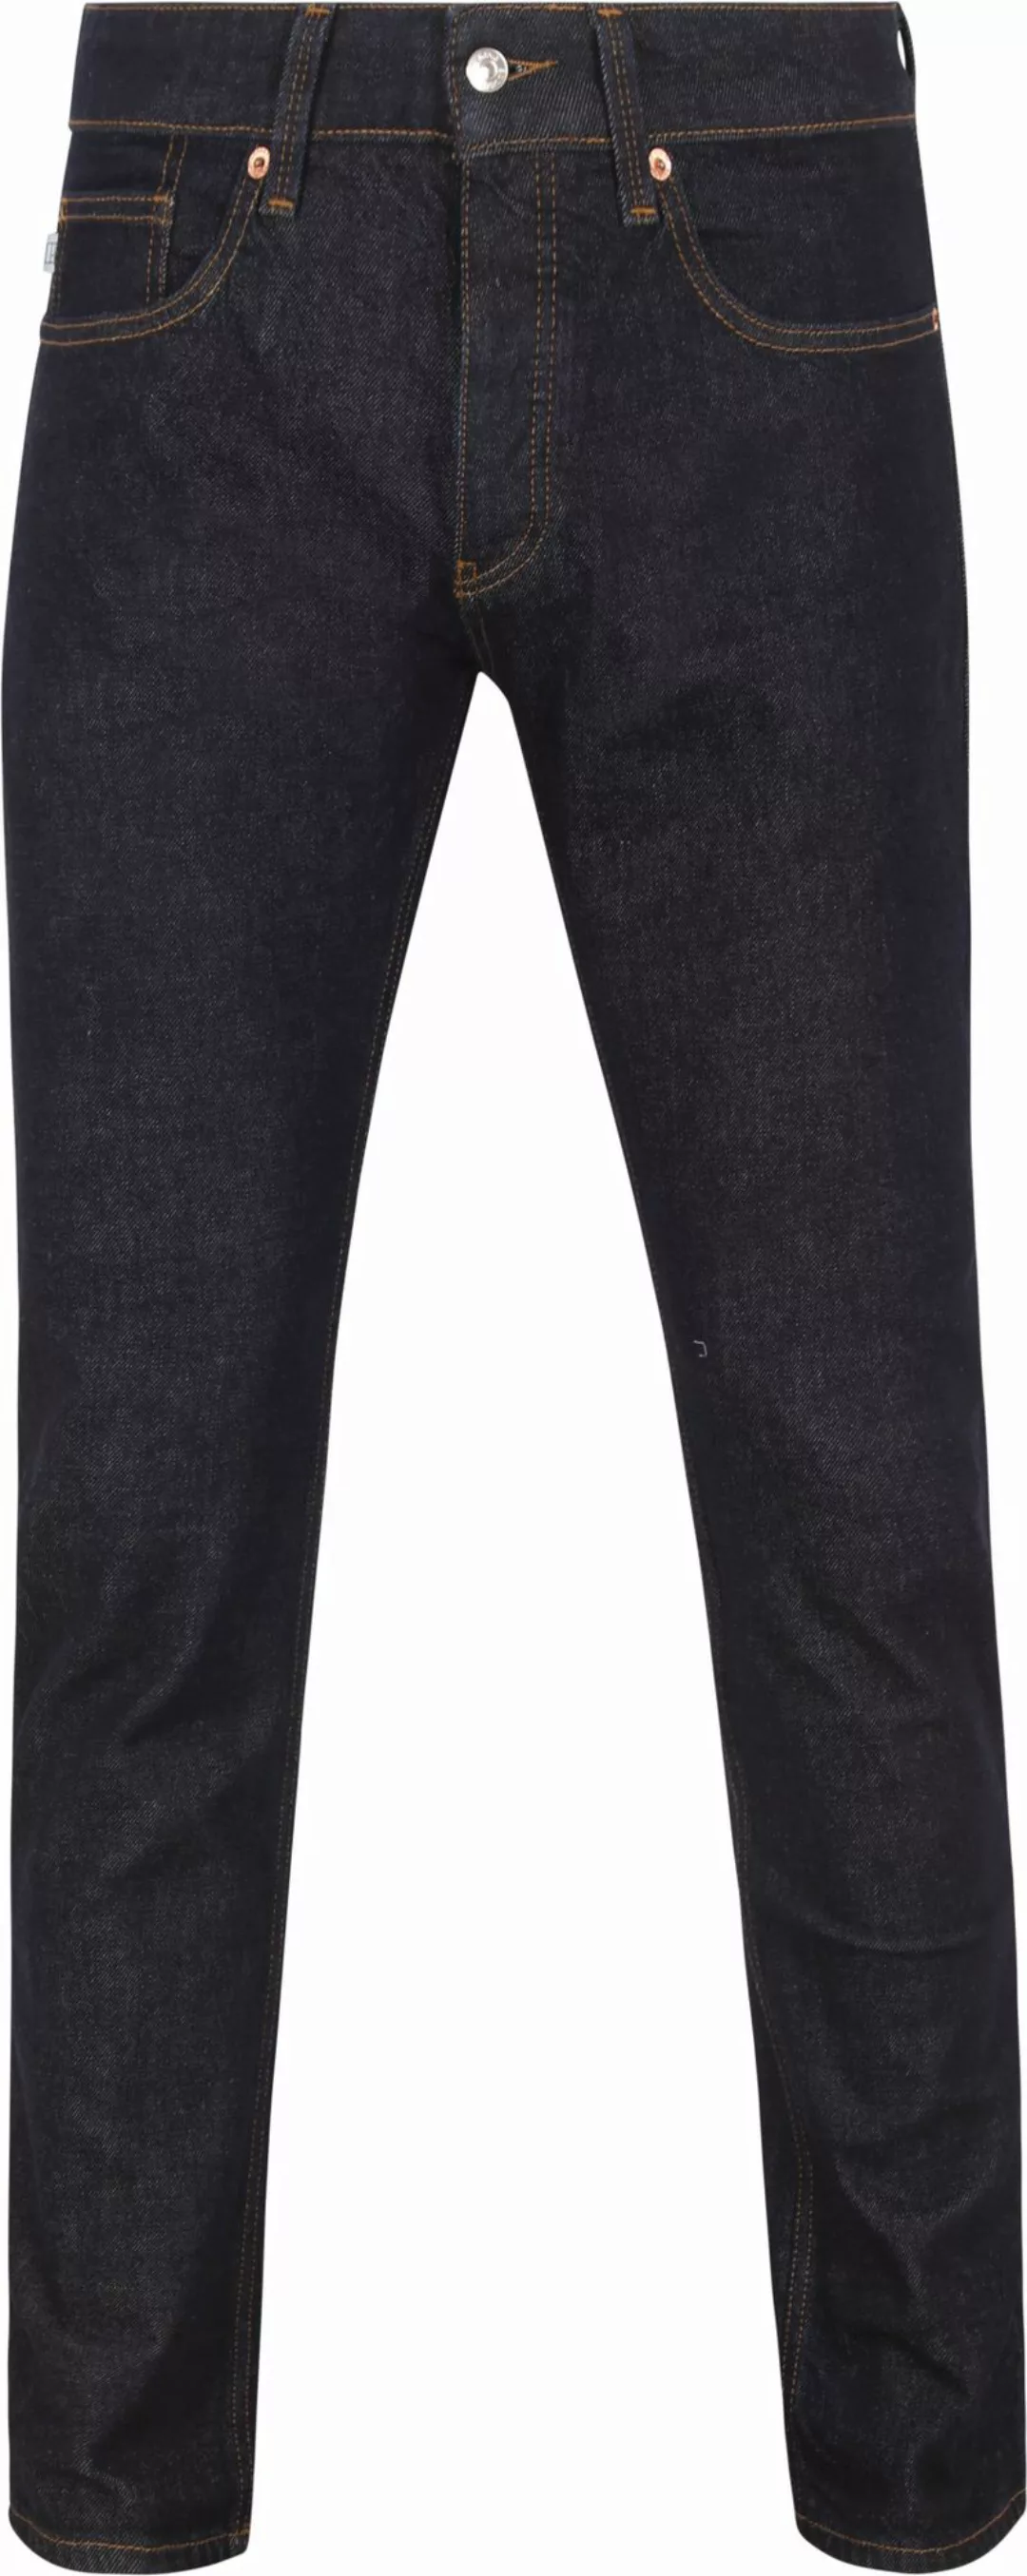 King Essentials The Jason Jeans Navy - Größe W 34 - L 34 günstig online kaufen